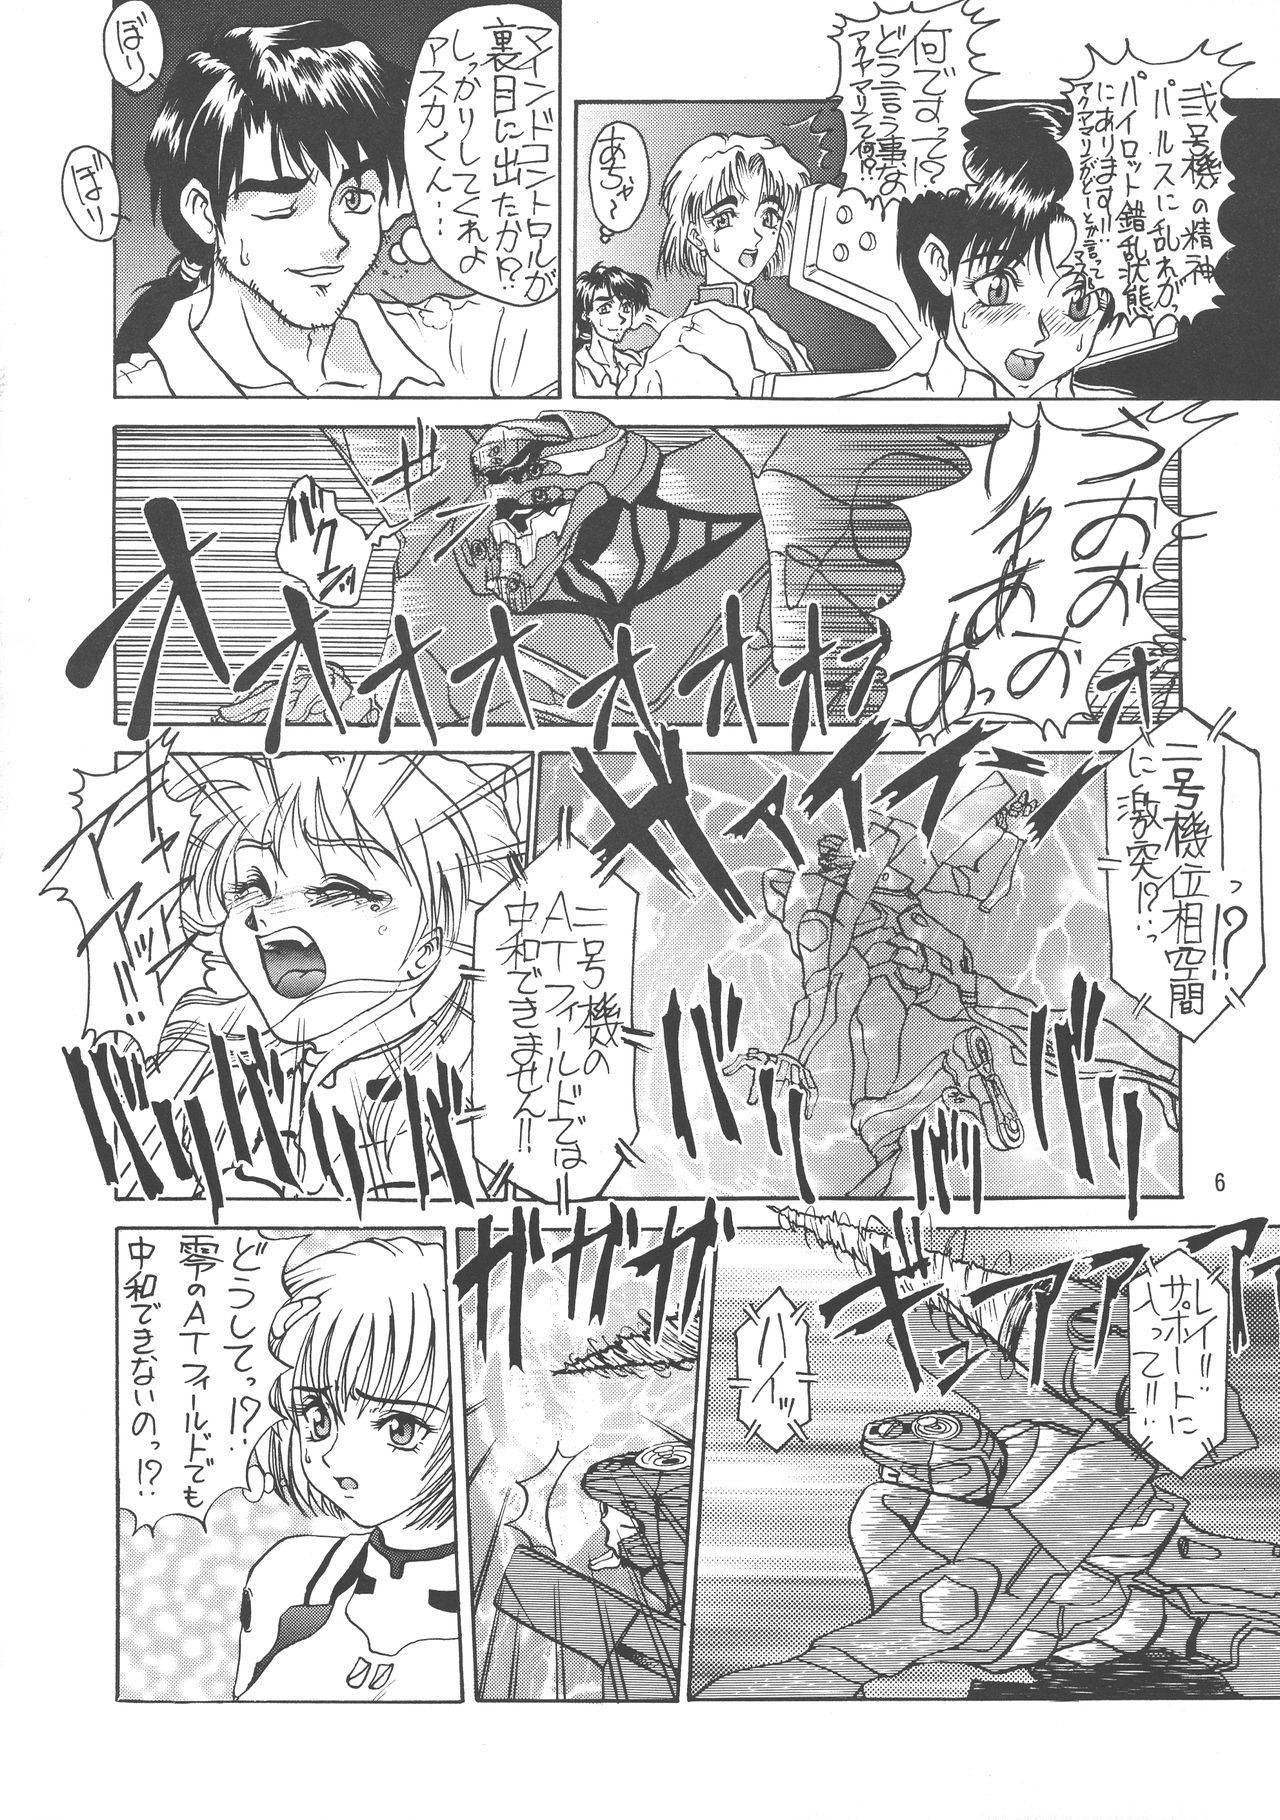 Emo Kuro no Kioku Ni - Neon genesis evangelion Street fighter Berserk X men Big breasts - Page 6